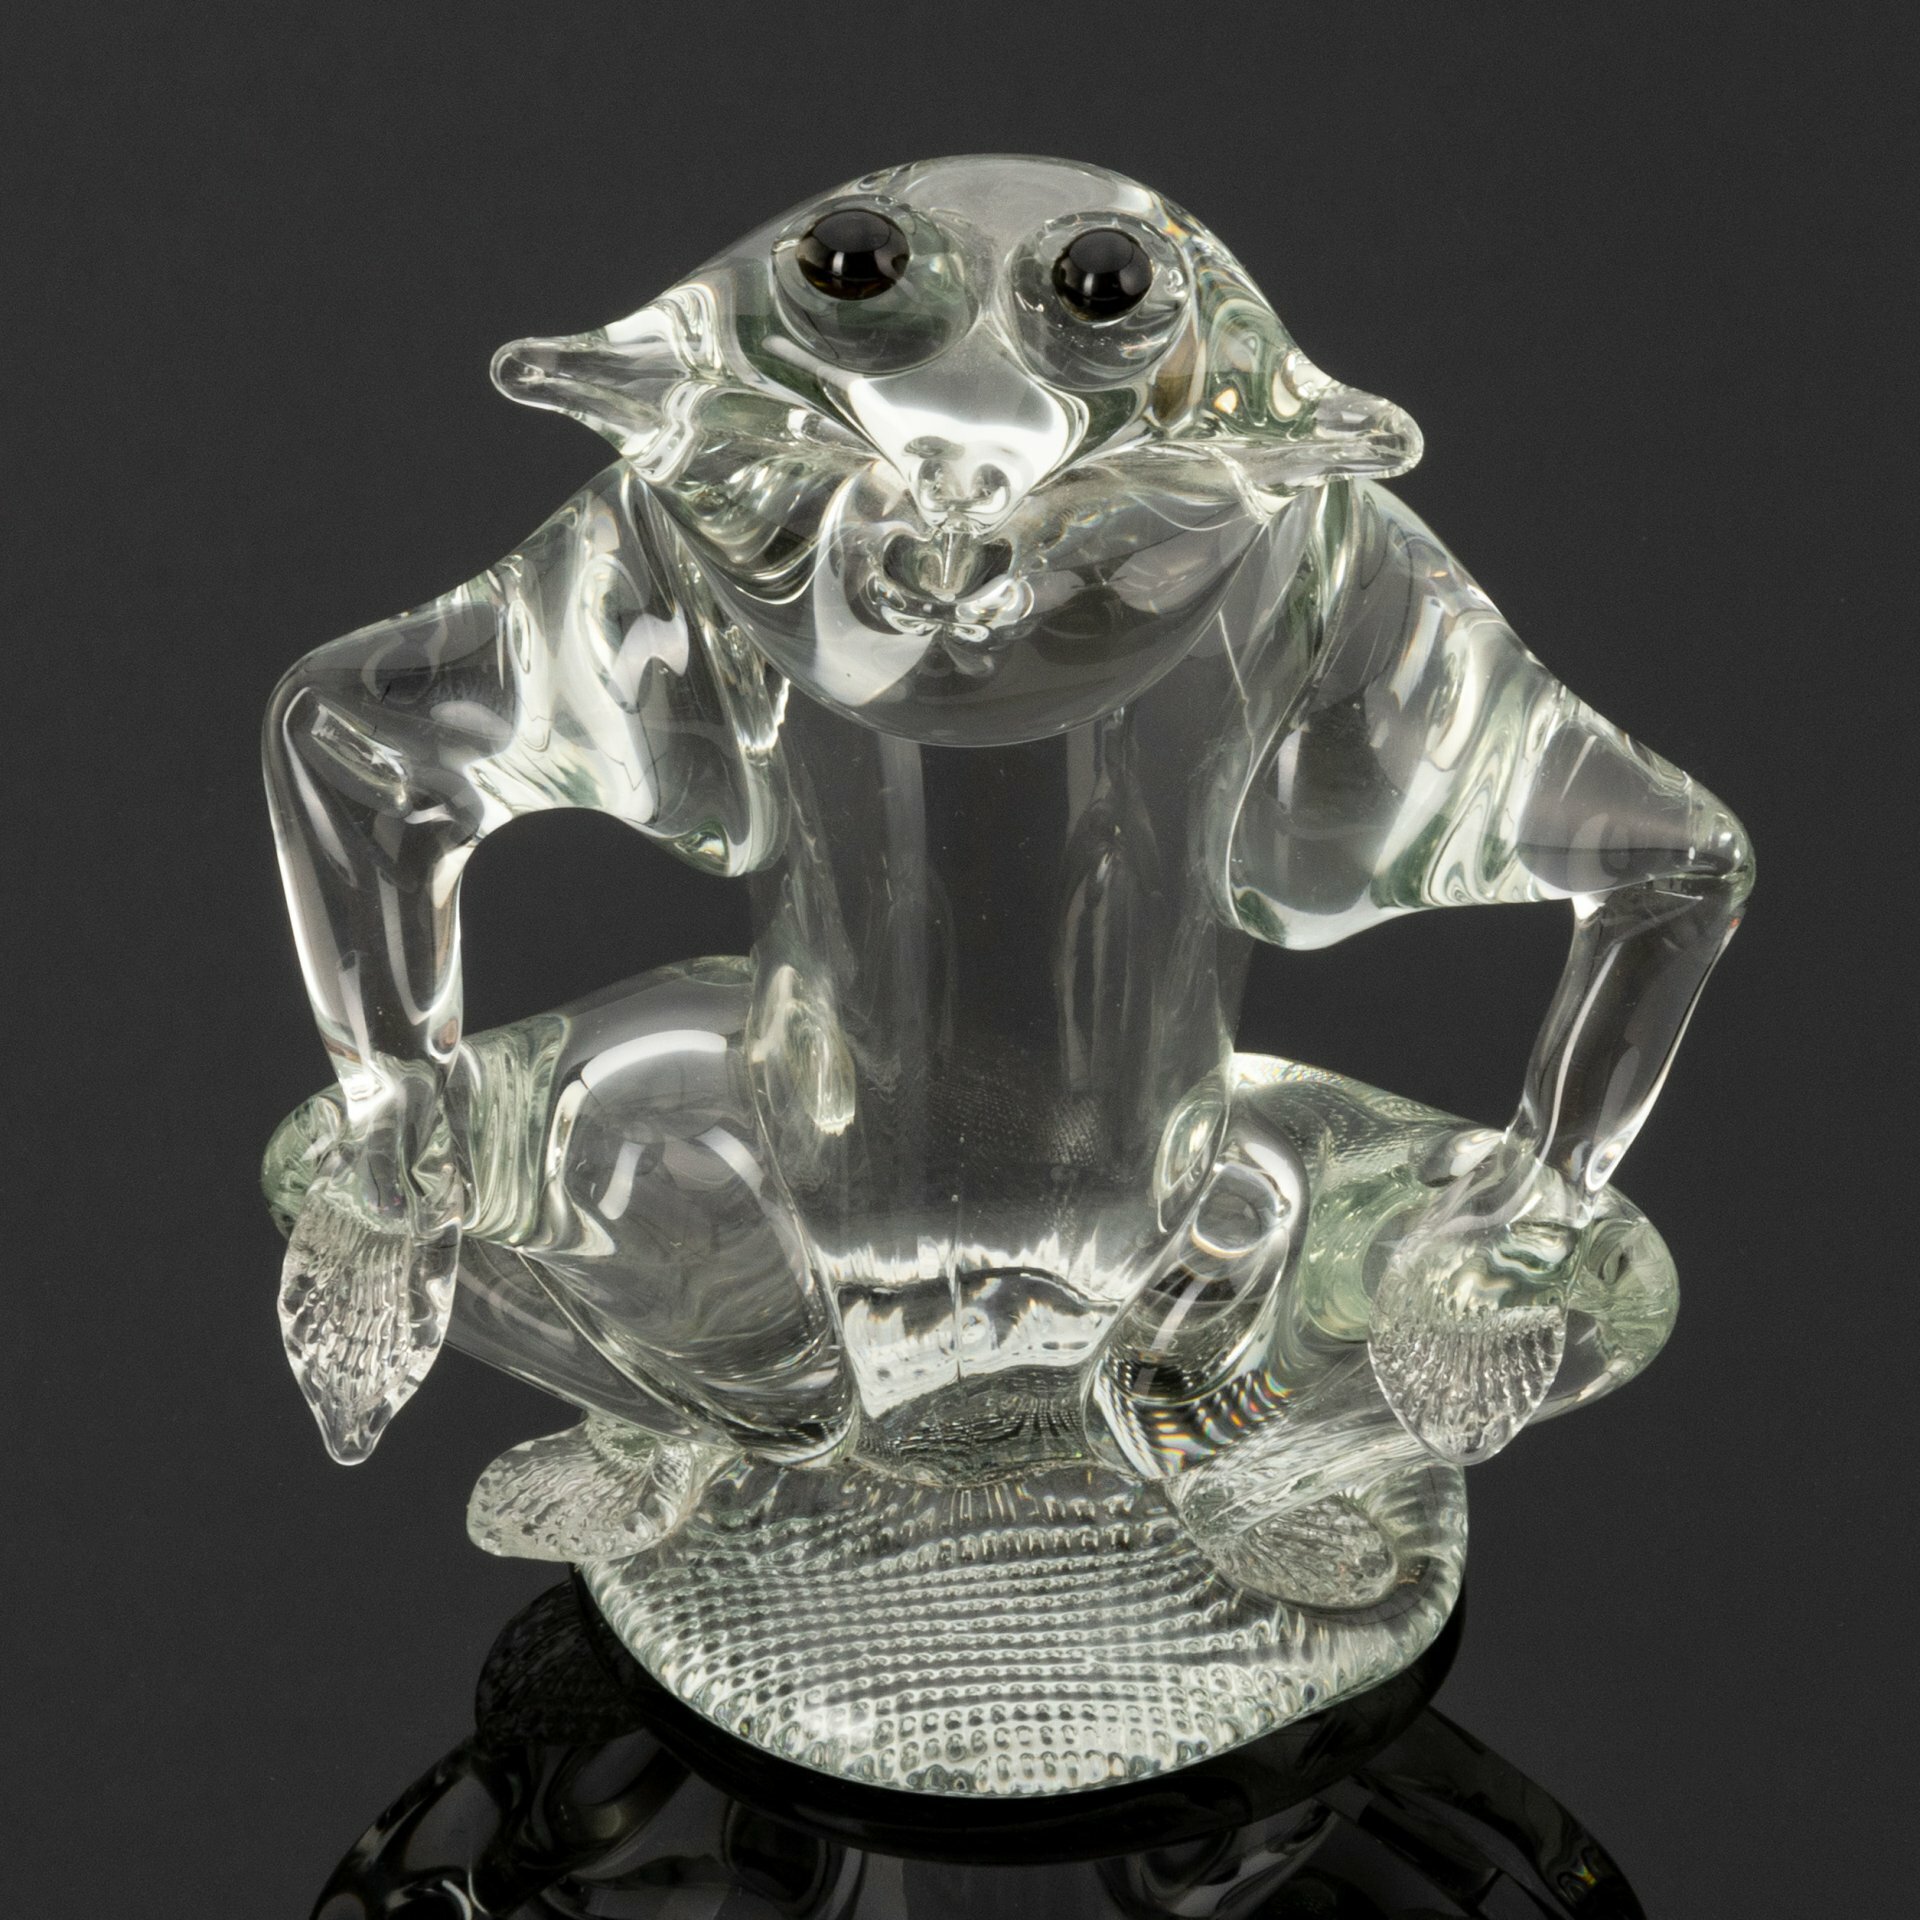 Статуэтка "Лягушка", о. Мурано, стекло, гутная техника, Италия, 1980-2000 гг.